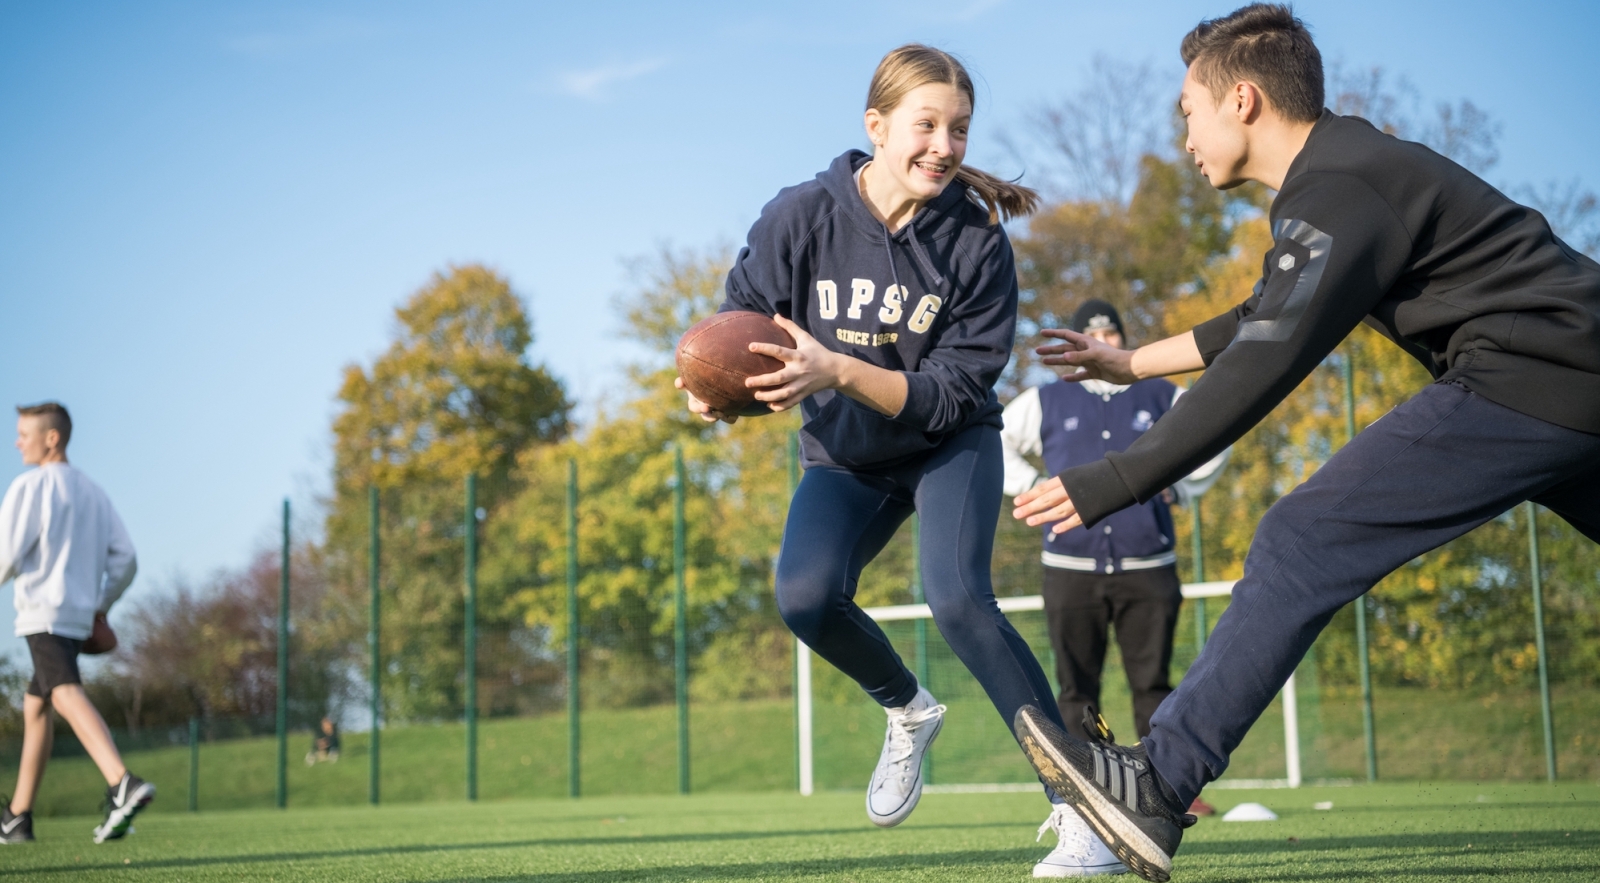 Ein junges Mädchen hält einen Football und versucht an einem jungen Mann vorbeizulaufen.